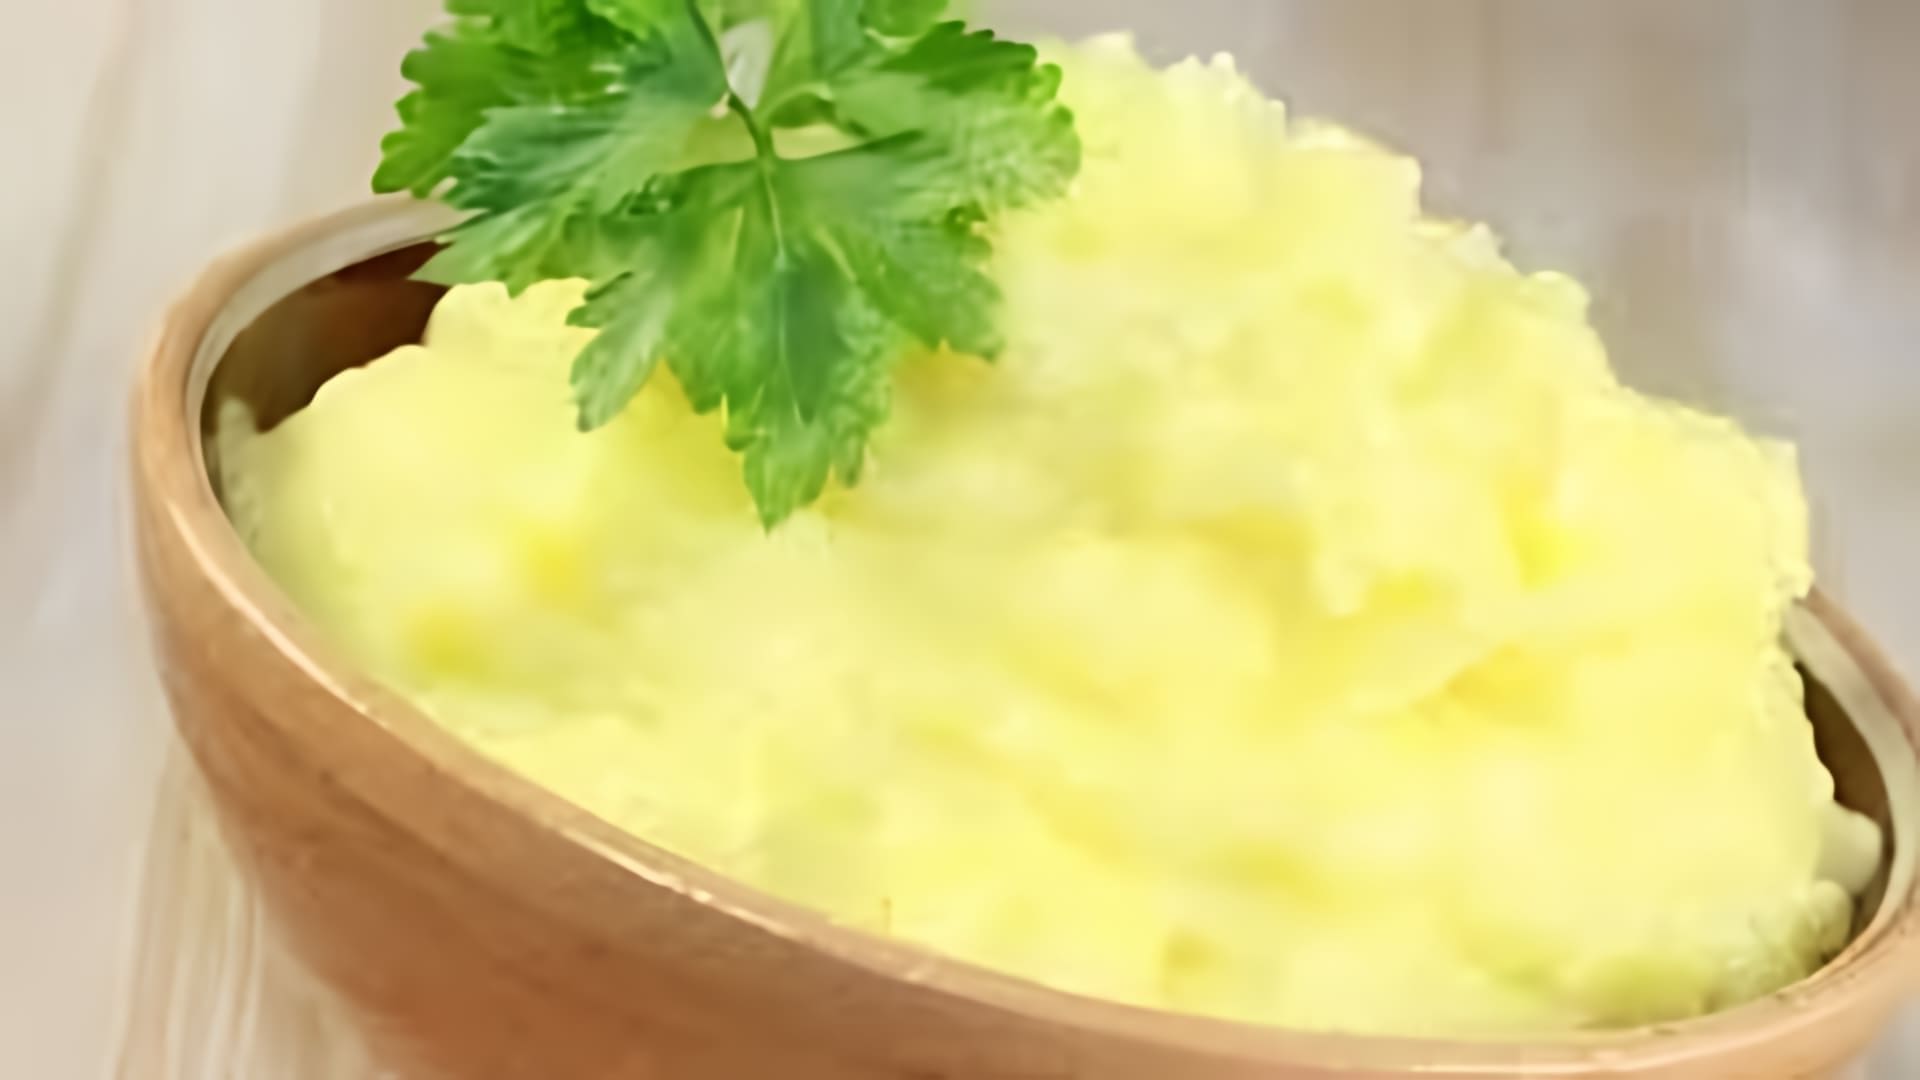 В этом видео демонстрируется процесс приготовления диетического картофельного пюре